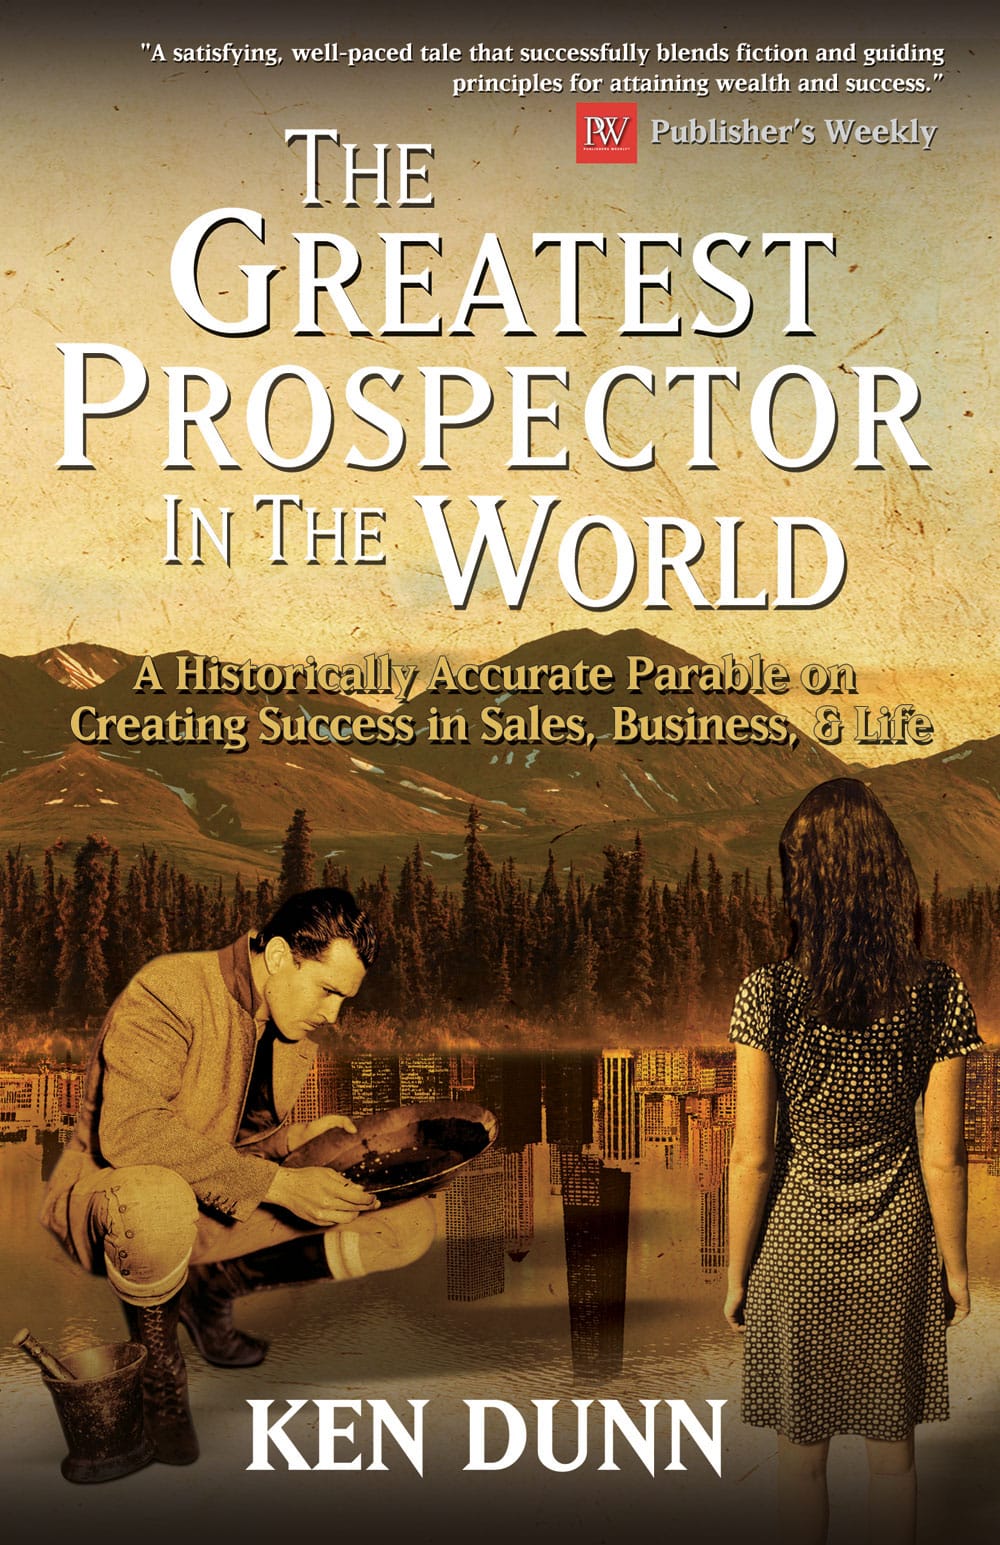 The Greatest Prospector in the World by Kenn Dunn